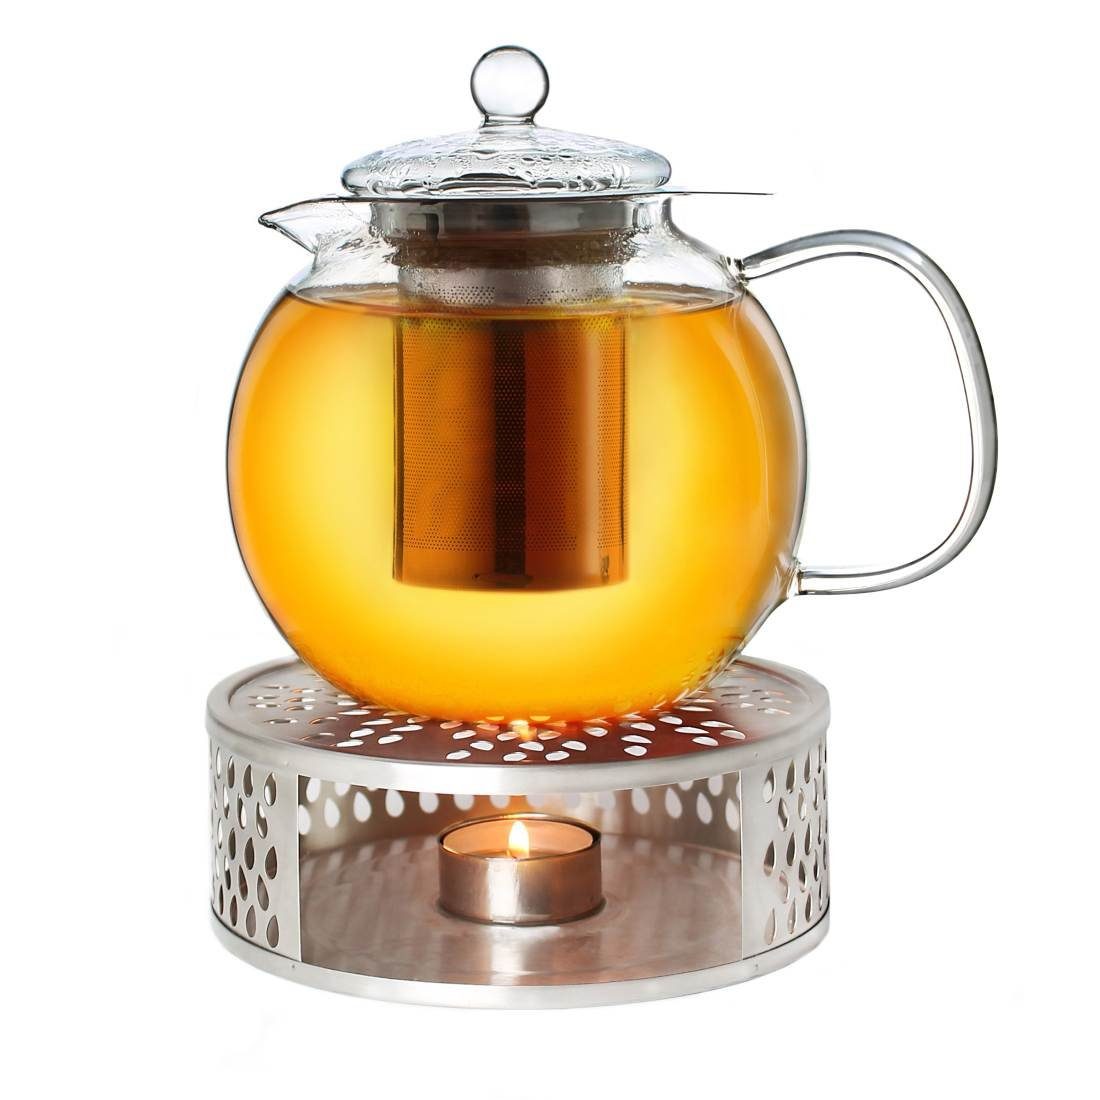 Stövchen Creano Creano + aus 3-teilige, 1,3l ein Teekanne Teekanne (Set) aus Glas Edelstahl,